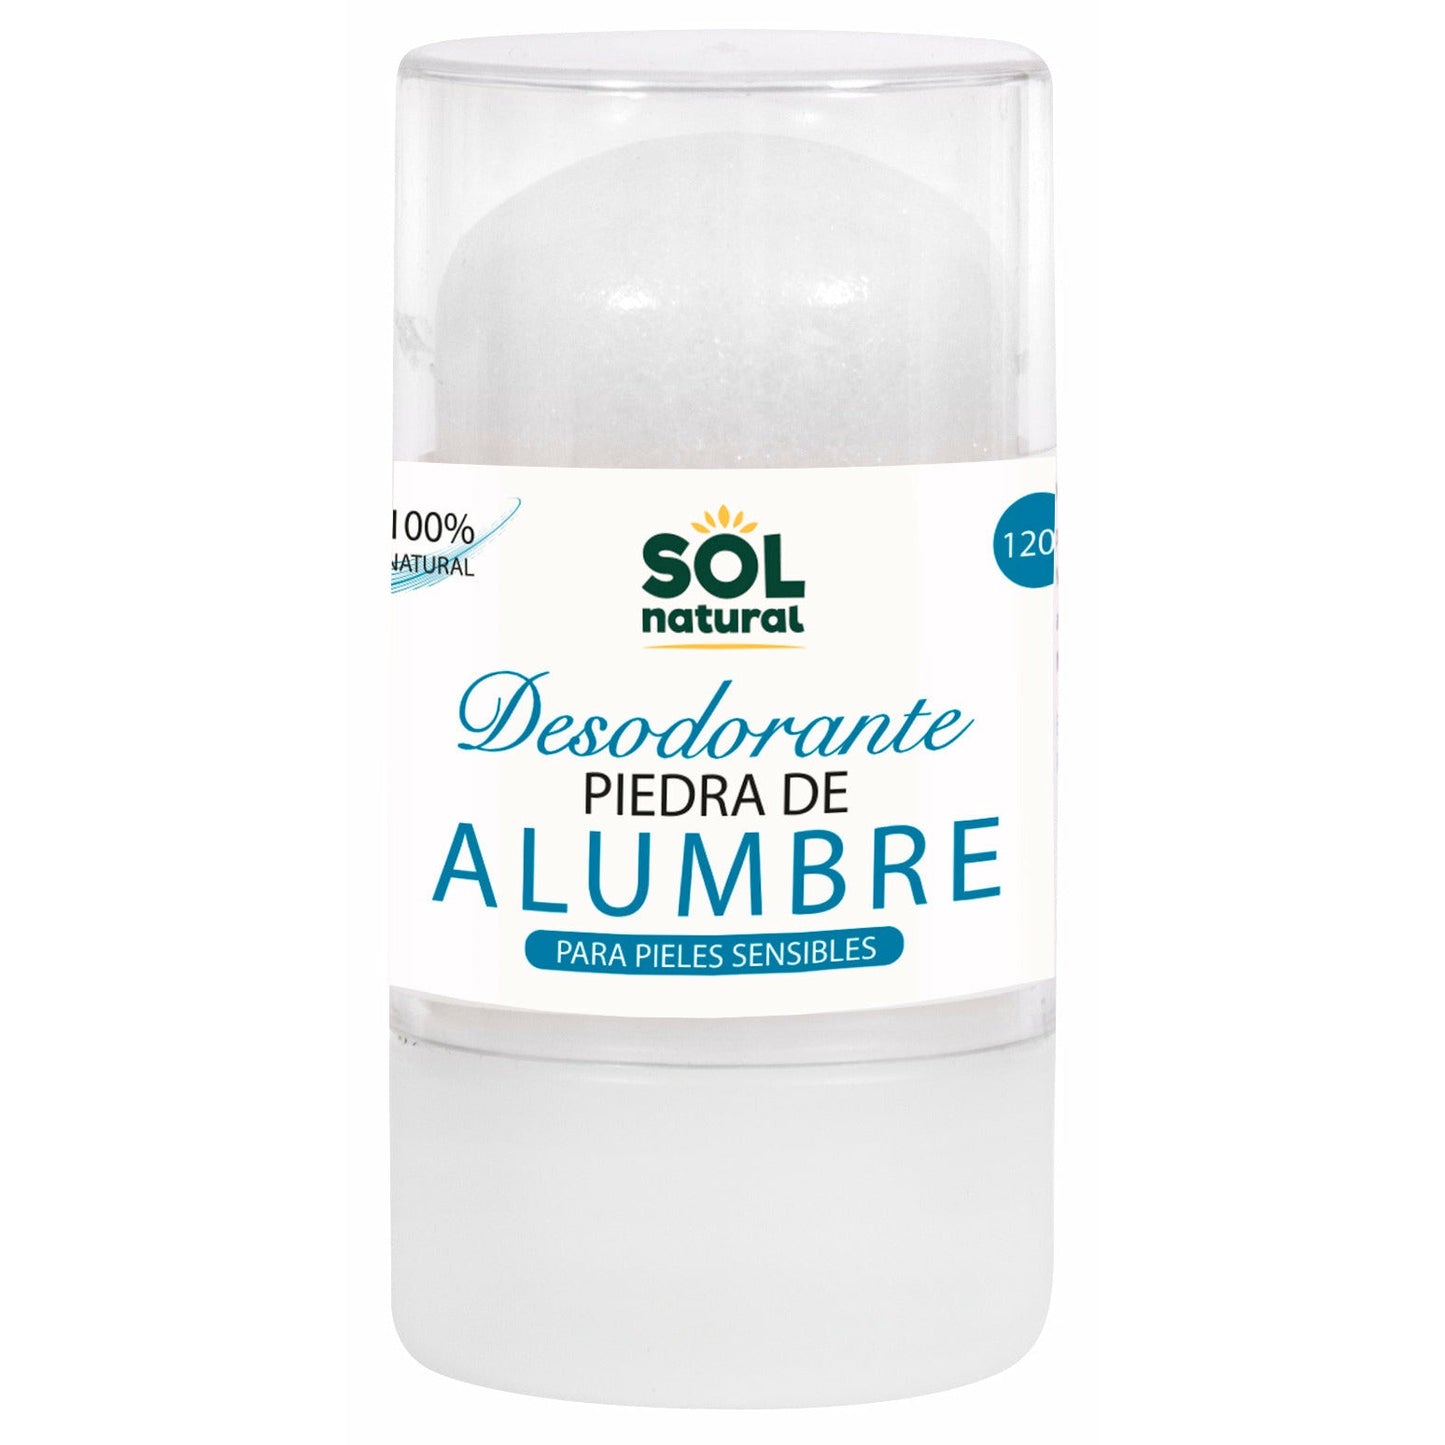 Desodorante Piedra De Alumbre 120 gr | Sol Natural - Dietetica Ferrer